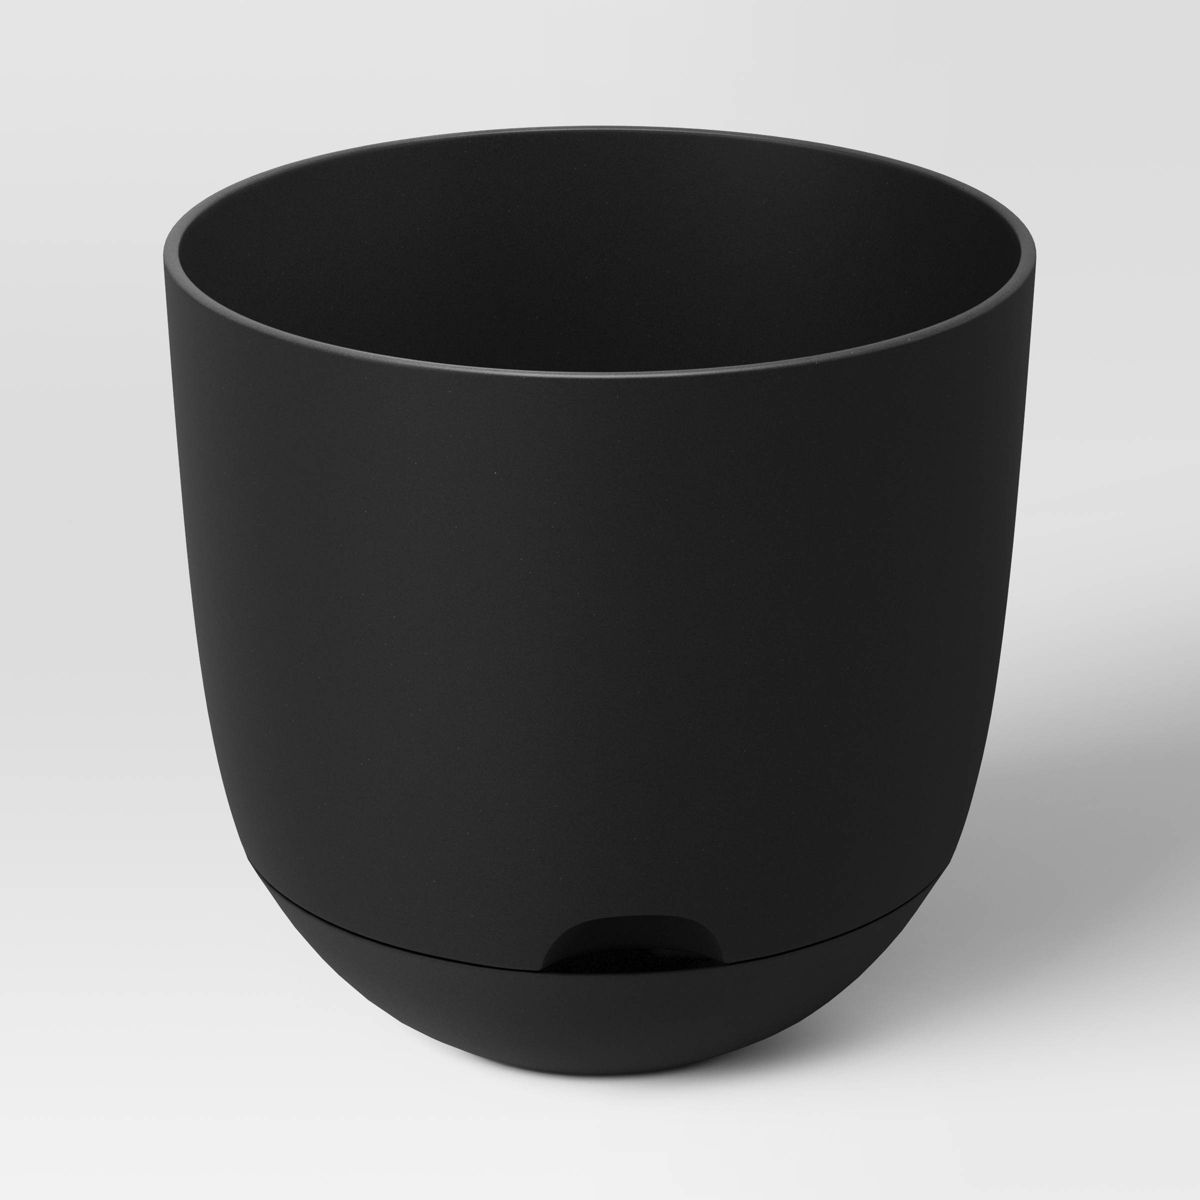 Self-Watering Plastic Indoor Outdoor Planter Pot Black 12"x12" - Room Essentials™ | Target